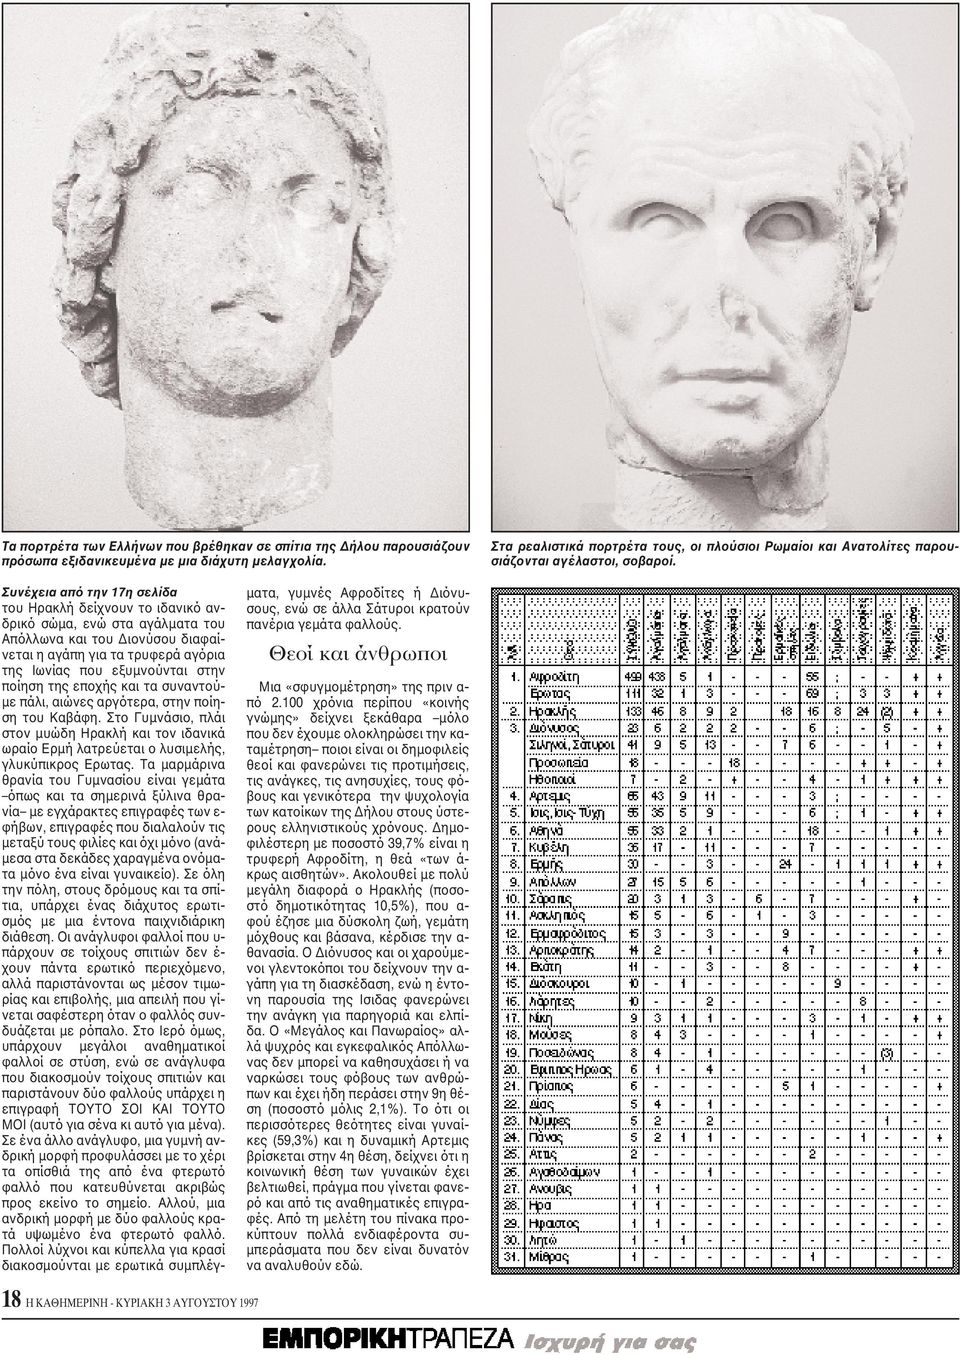 Συνέχεια από την 17η σελίδα του Hρακλή δείχνουν το ιδανικό ανδρικό σώμα, ενώ στα αγάλματα του Aπόλλωνα και του Διονύσου διαφαίνεται η αγάπη για τα τρυφερά αγόρια της Iωνίας που εξυμνούνται στην